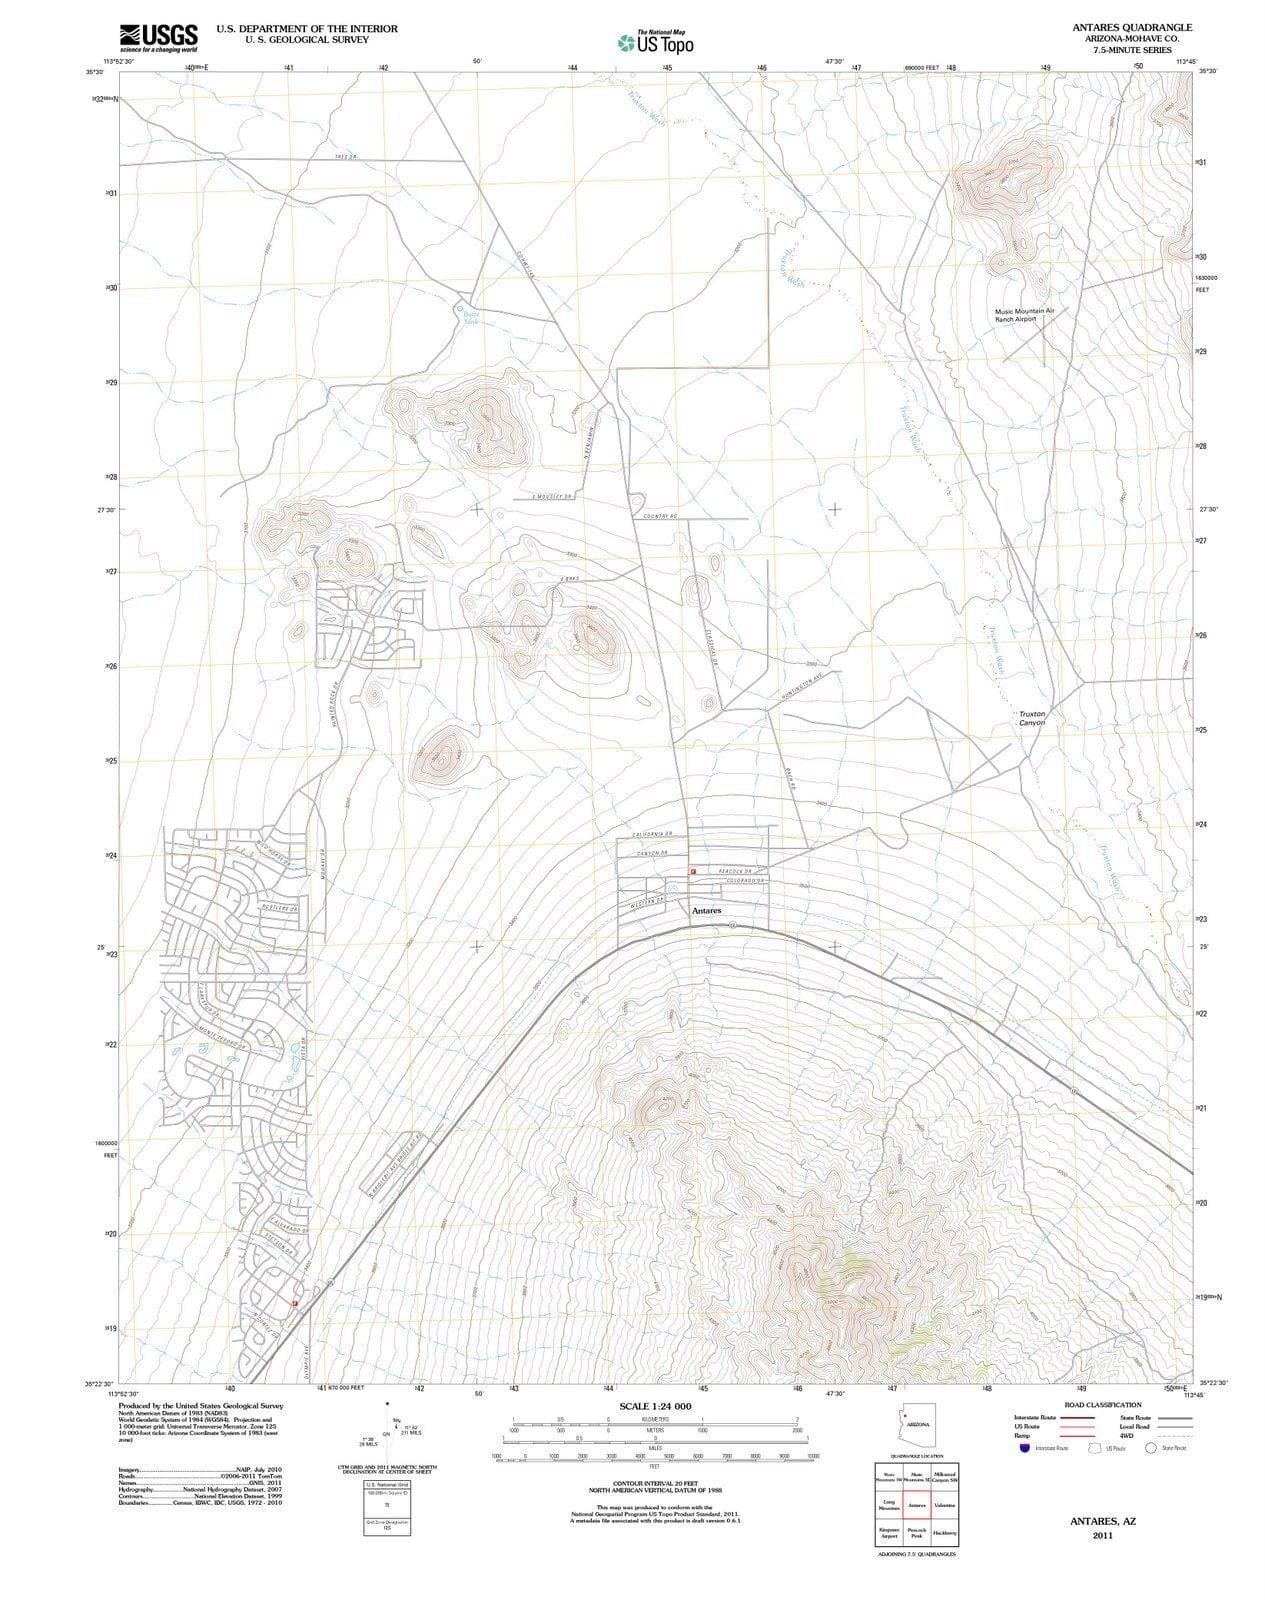 2011 Antares, AZ - Arizona - USGS Topographic Map